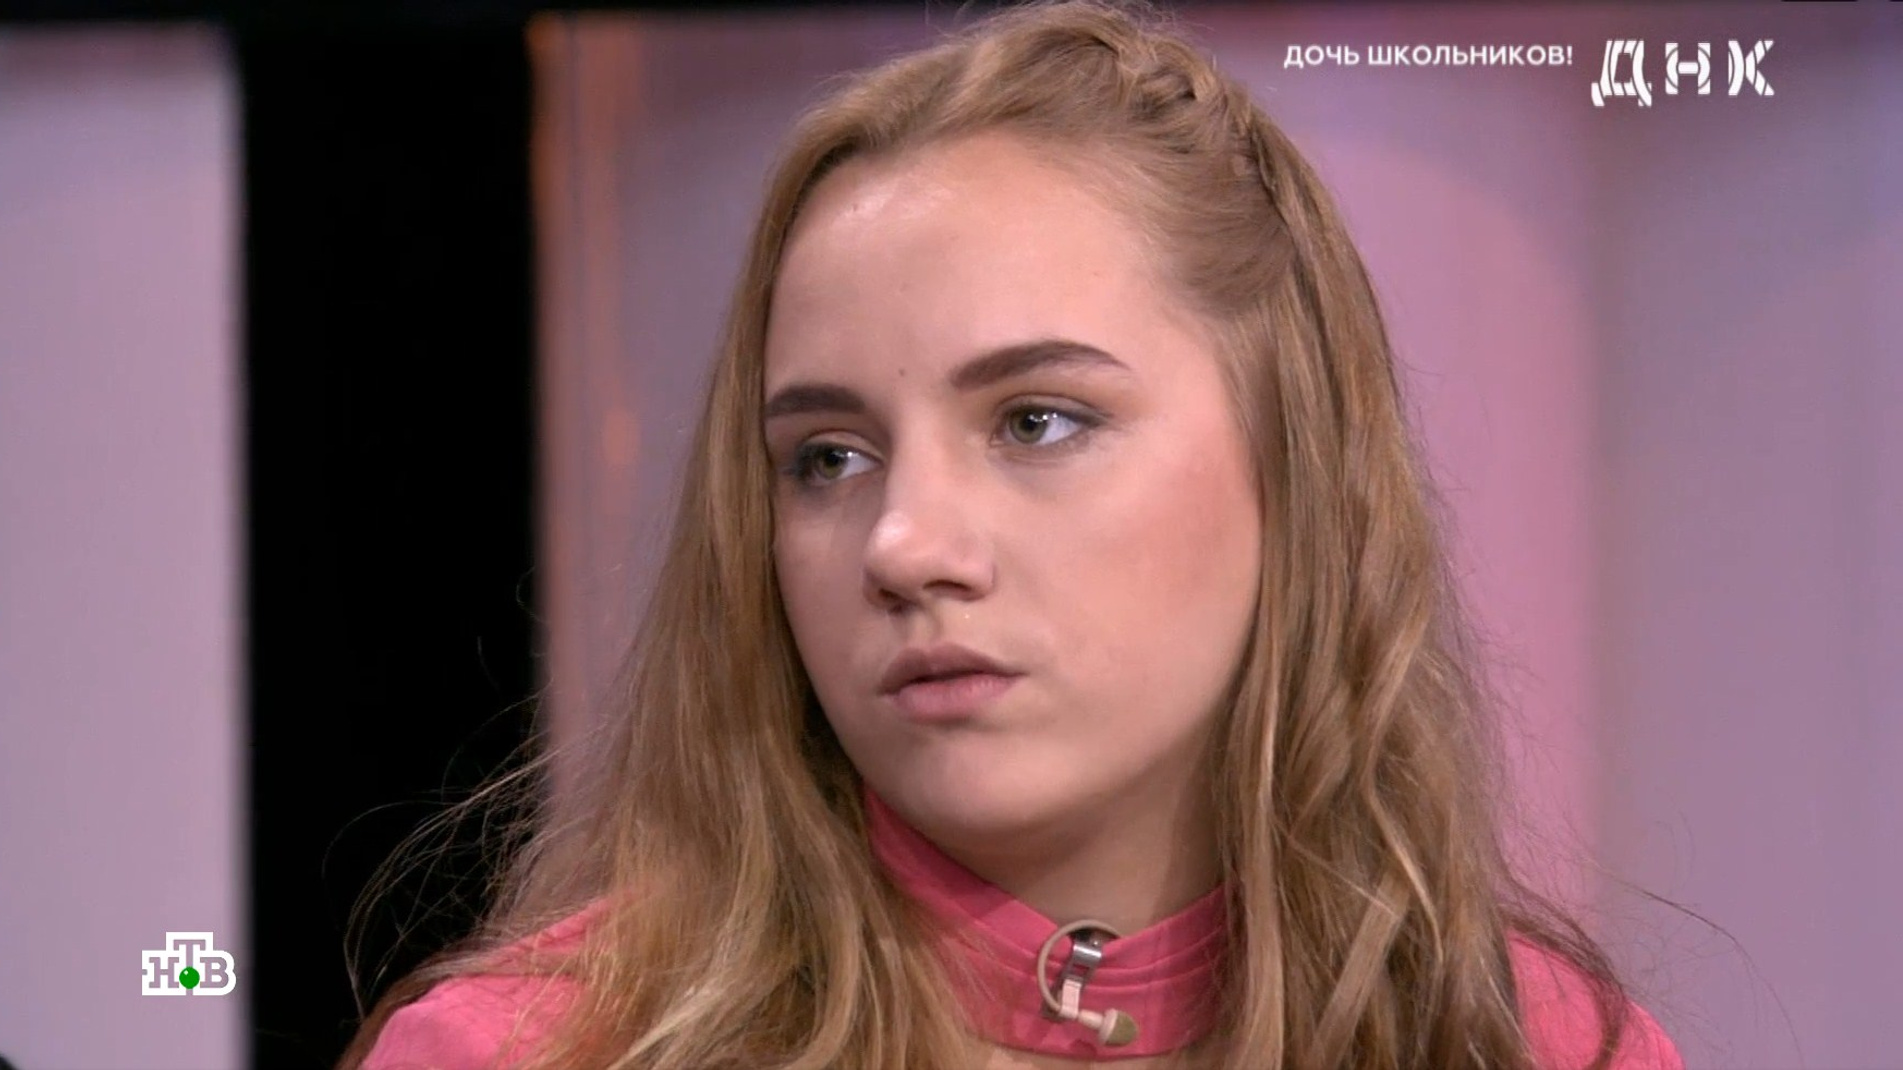 «Зачем меня так выставляют?!»: школьница, родившая в 15 лет, пропала после выхода программы в эфир